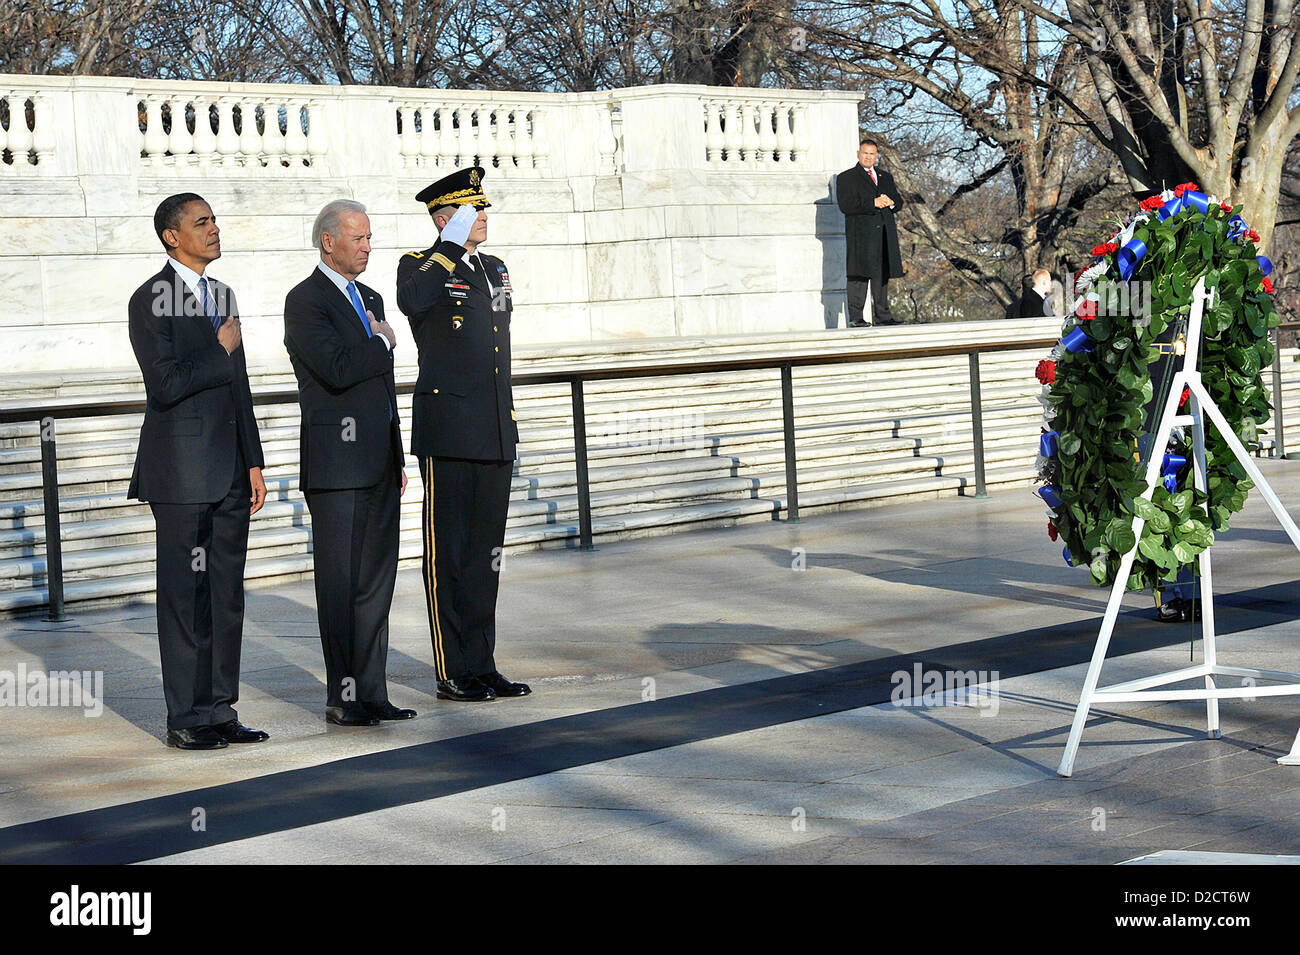 US-Präsident Barack Obama und Vize-Präsident Joe Biden Rendern Auszeichnung am Grab des unbekannten 20. Januar 2013 am Nationalfriedhof Arlington, VA. Es ist eine Tradition für den Präsidenten, die unbekannten Soldaten am Eröffnungstag zu Ehren. Stockfoto